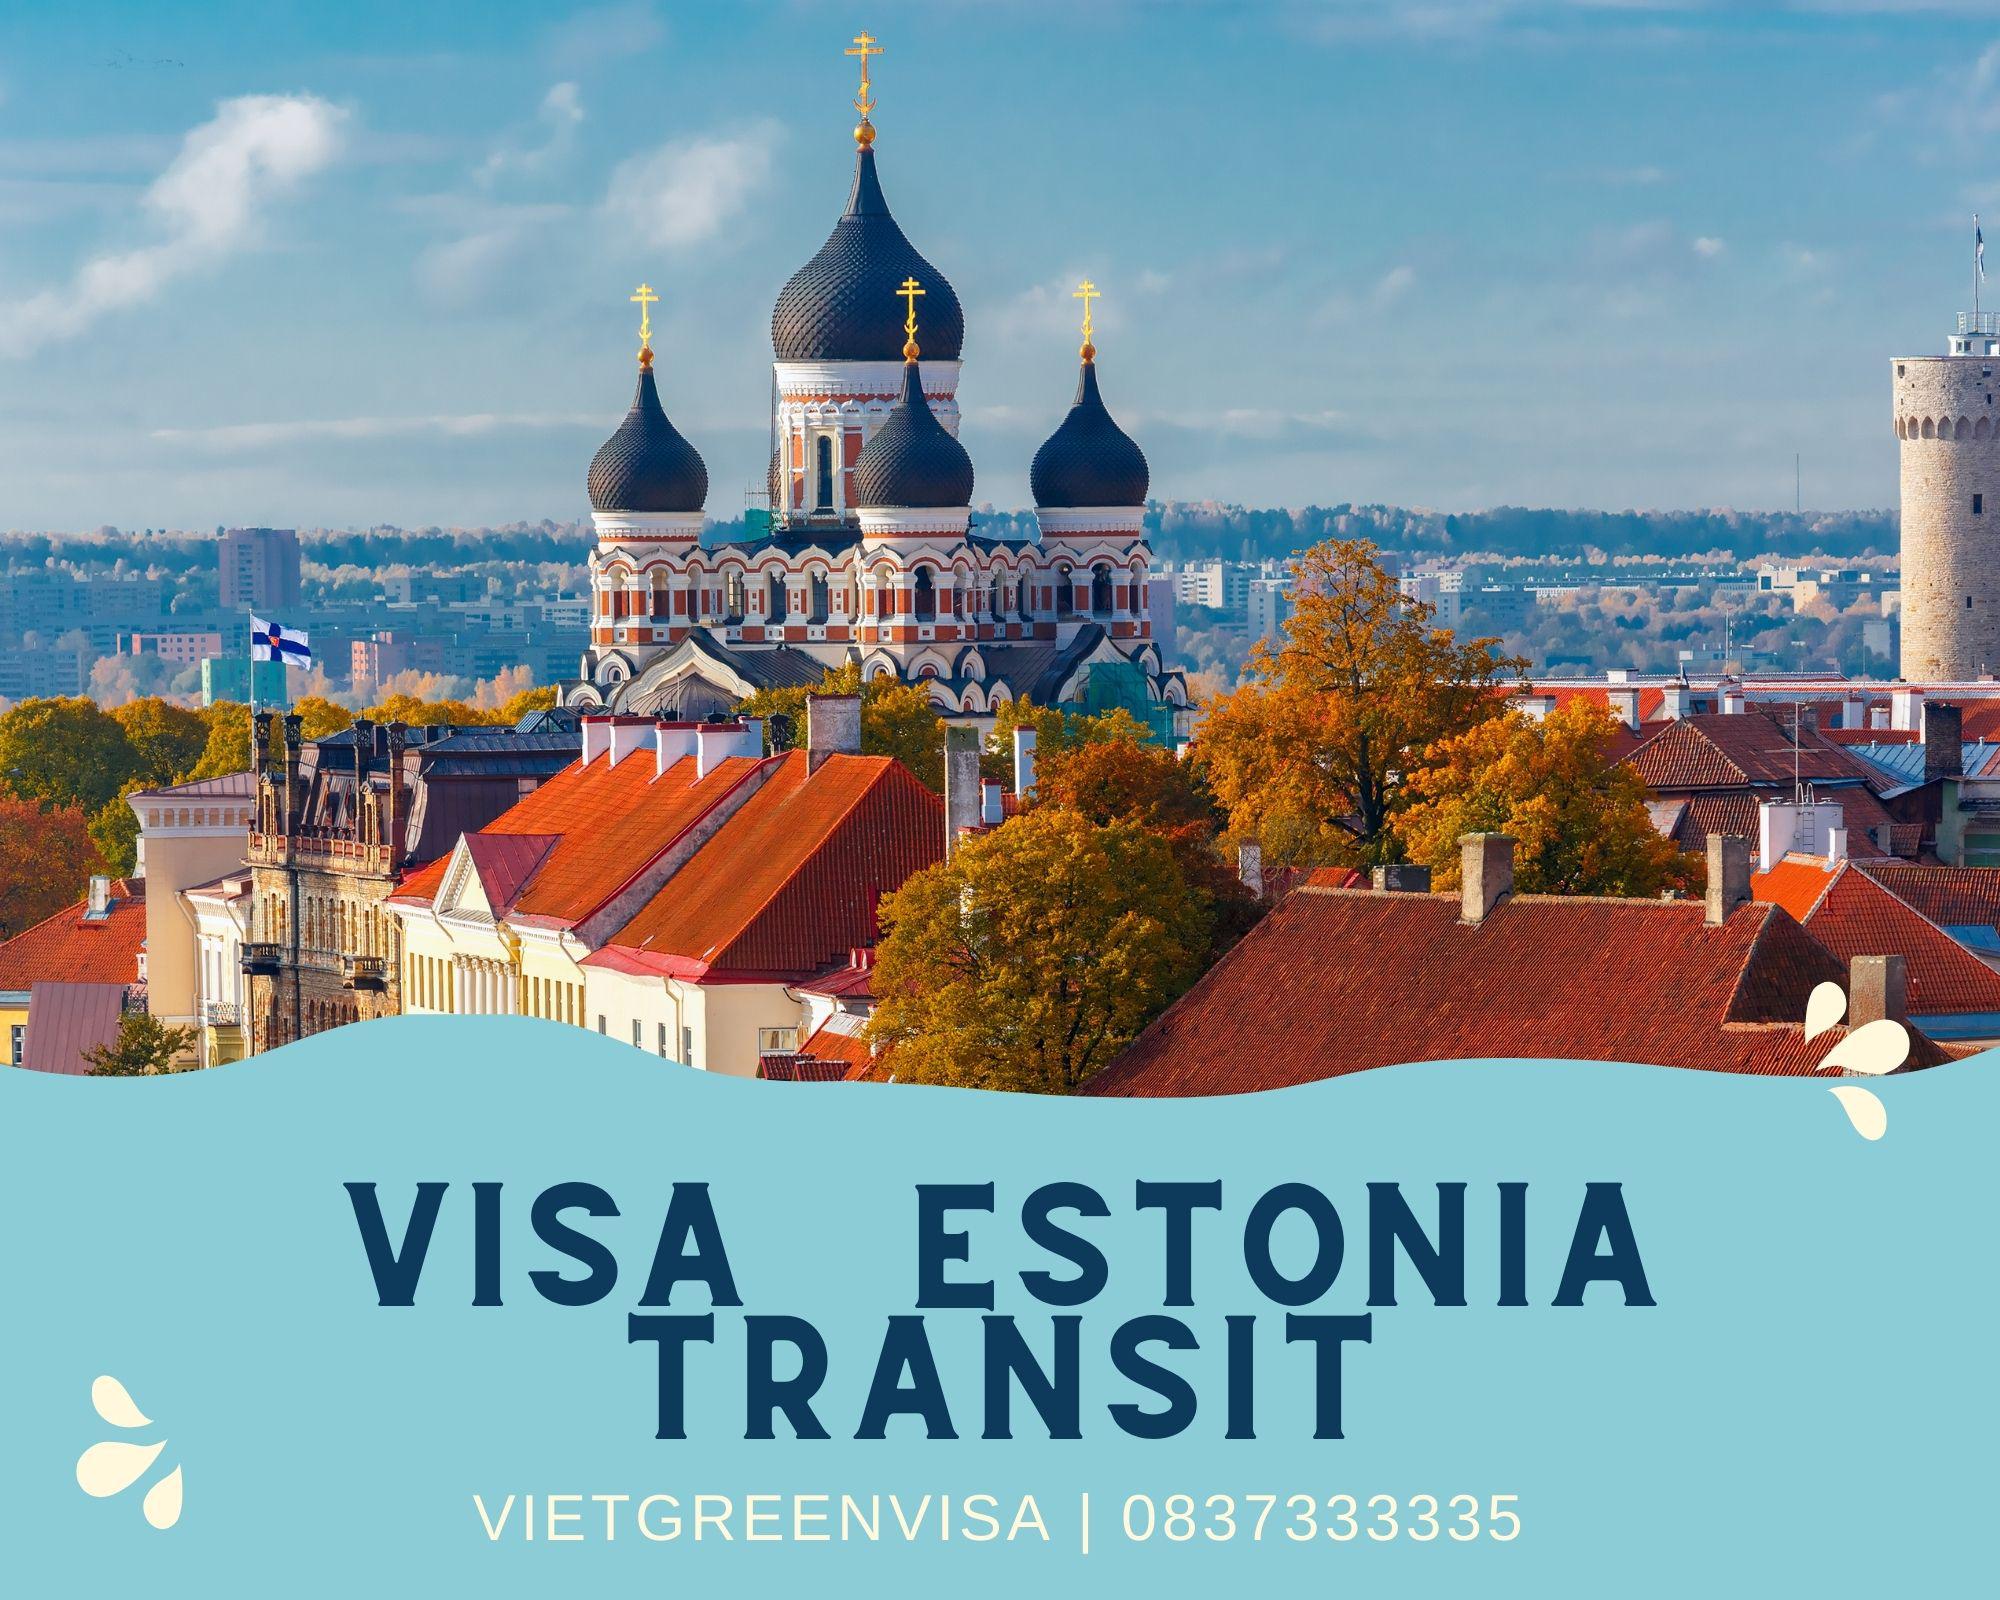 Tư vấn xin visa Estonia quá cảnh, transit nhanh chóng